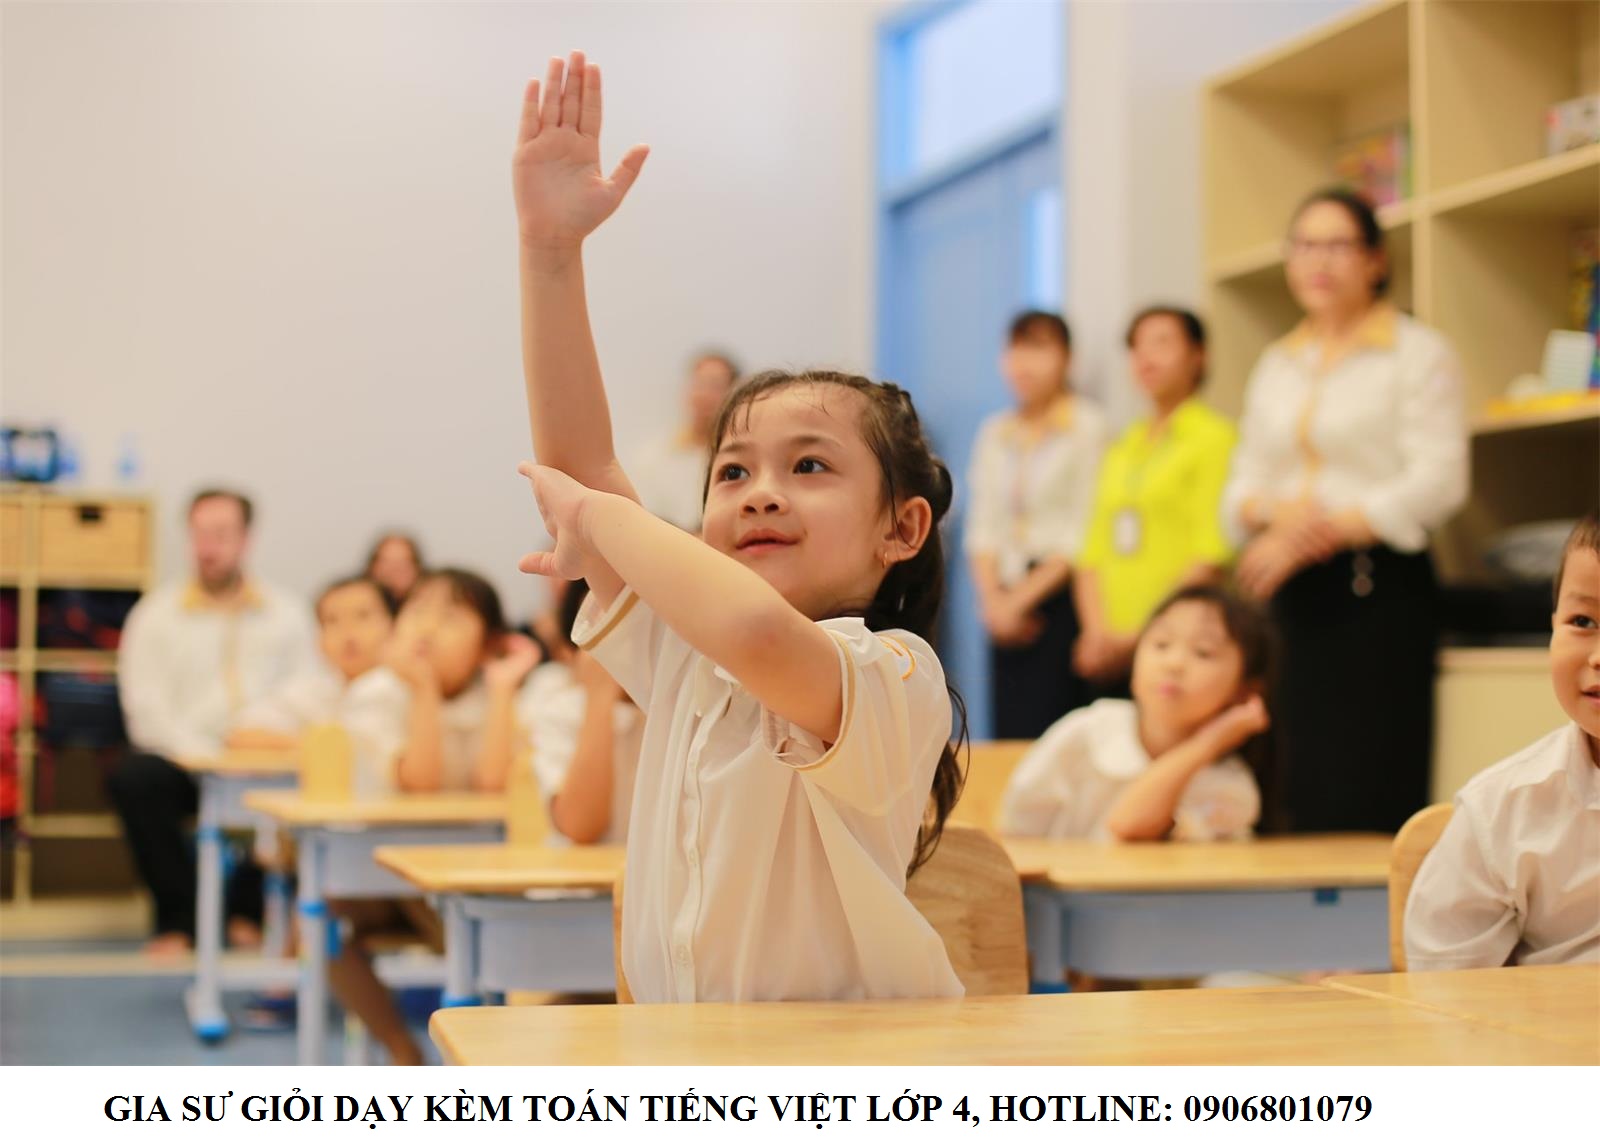 Gia sư dạy kèm Toán tiếng Việt lớp 4 giỏi, tận tâm, uy tín